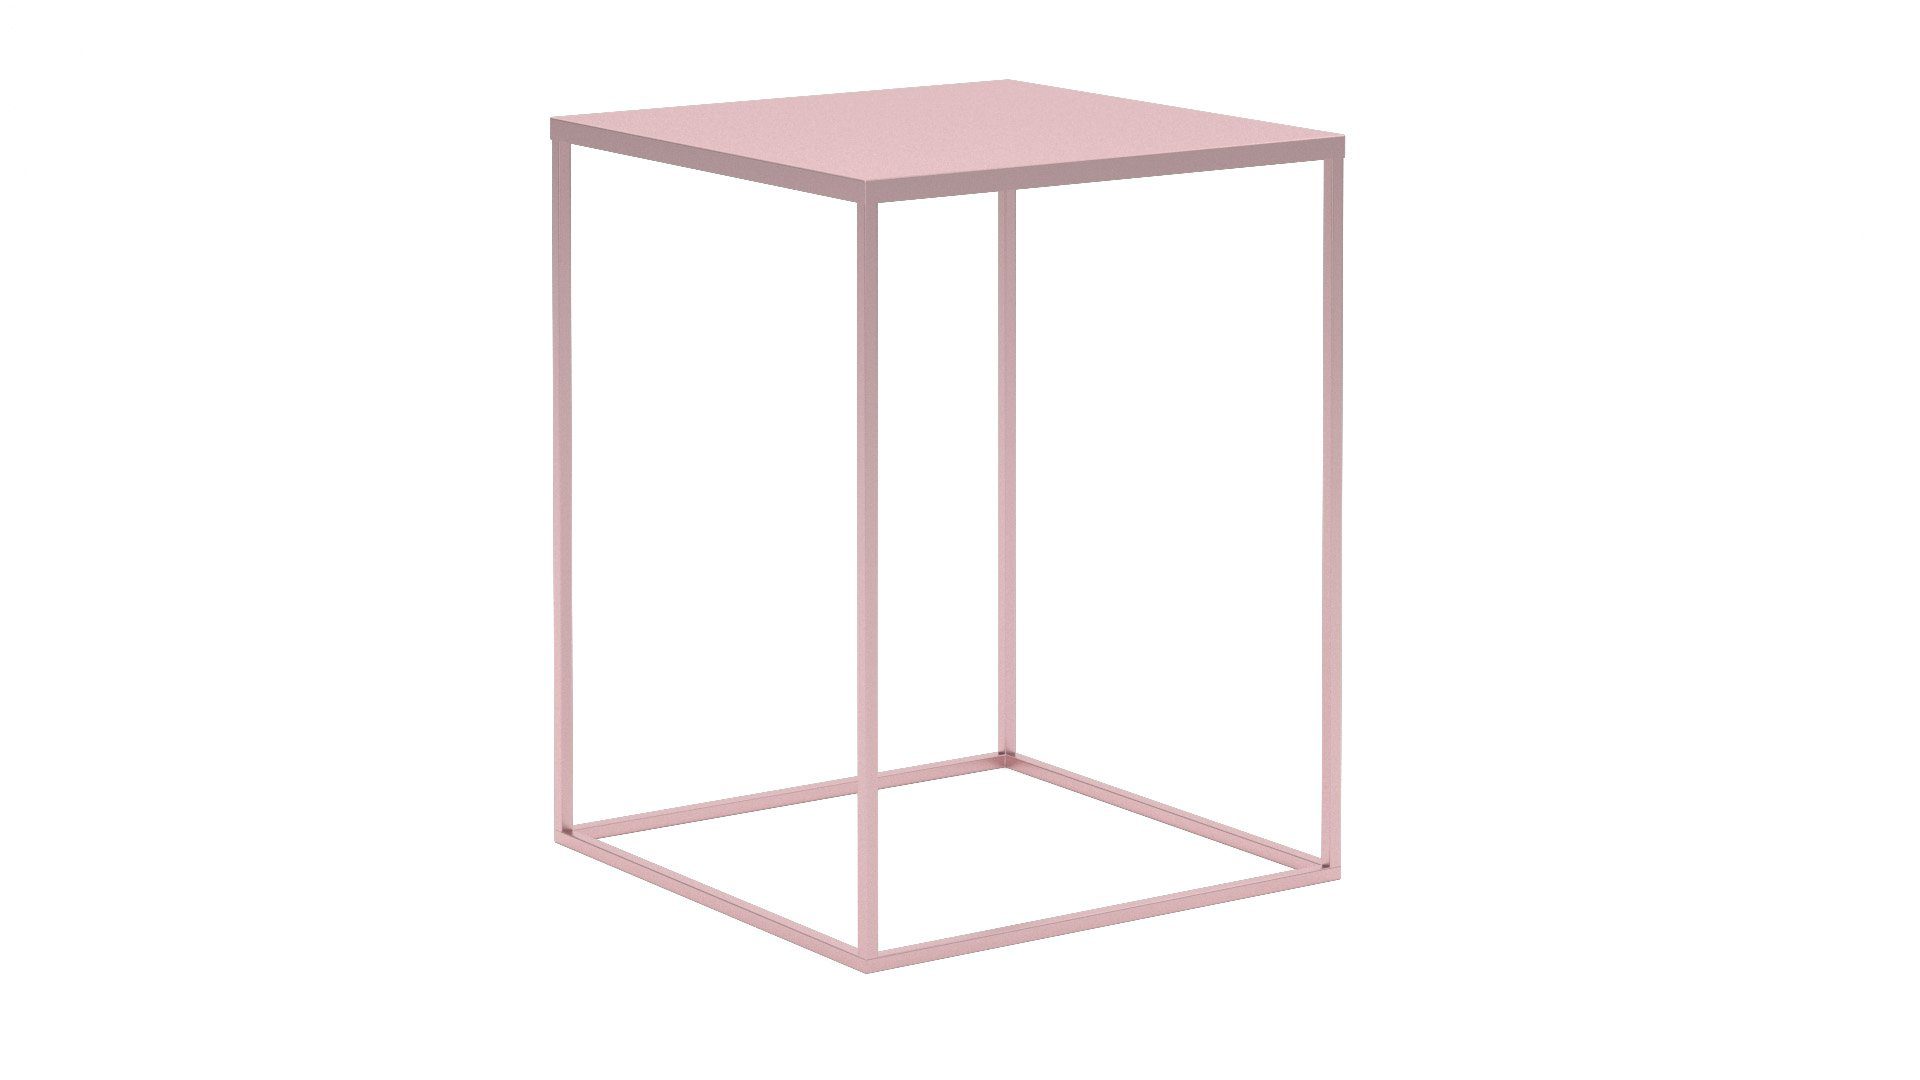 Siblo Nachttisch Loft-Stil Nachttisch - Ein modernes minimalistischer - Schlafzimmer Nachttisch Diana im Rosa Metall moderner 